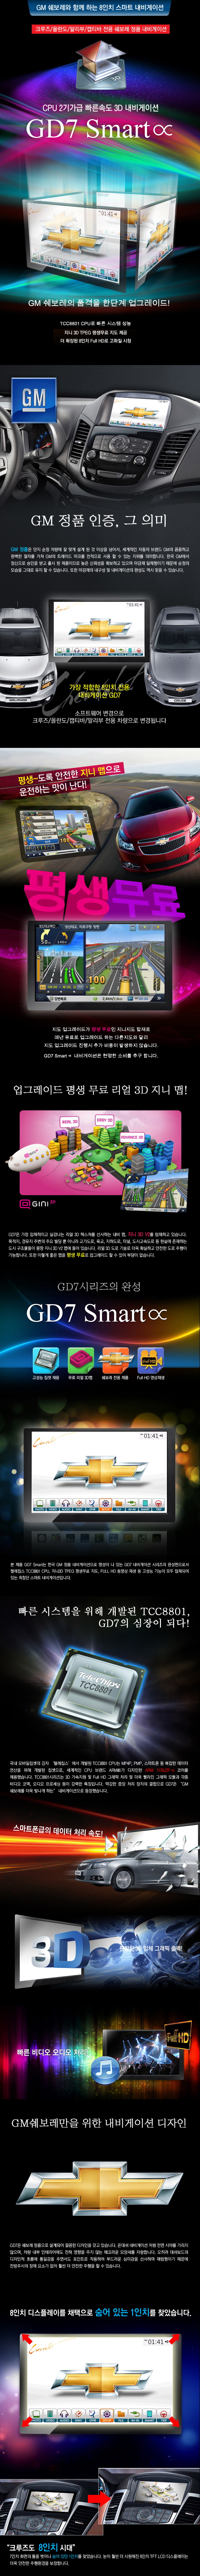 gd7 smart a_01.jpg